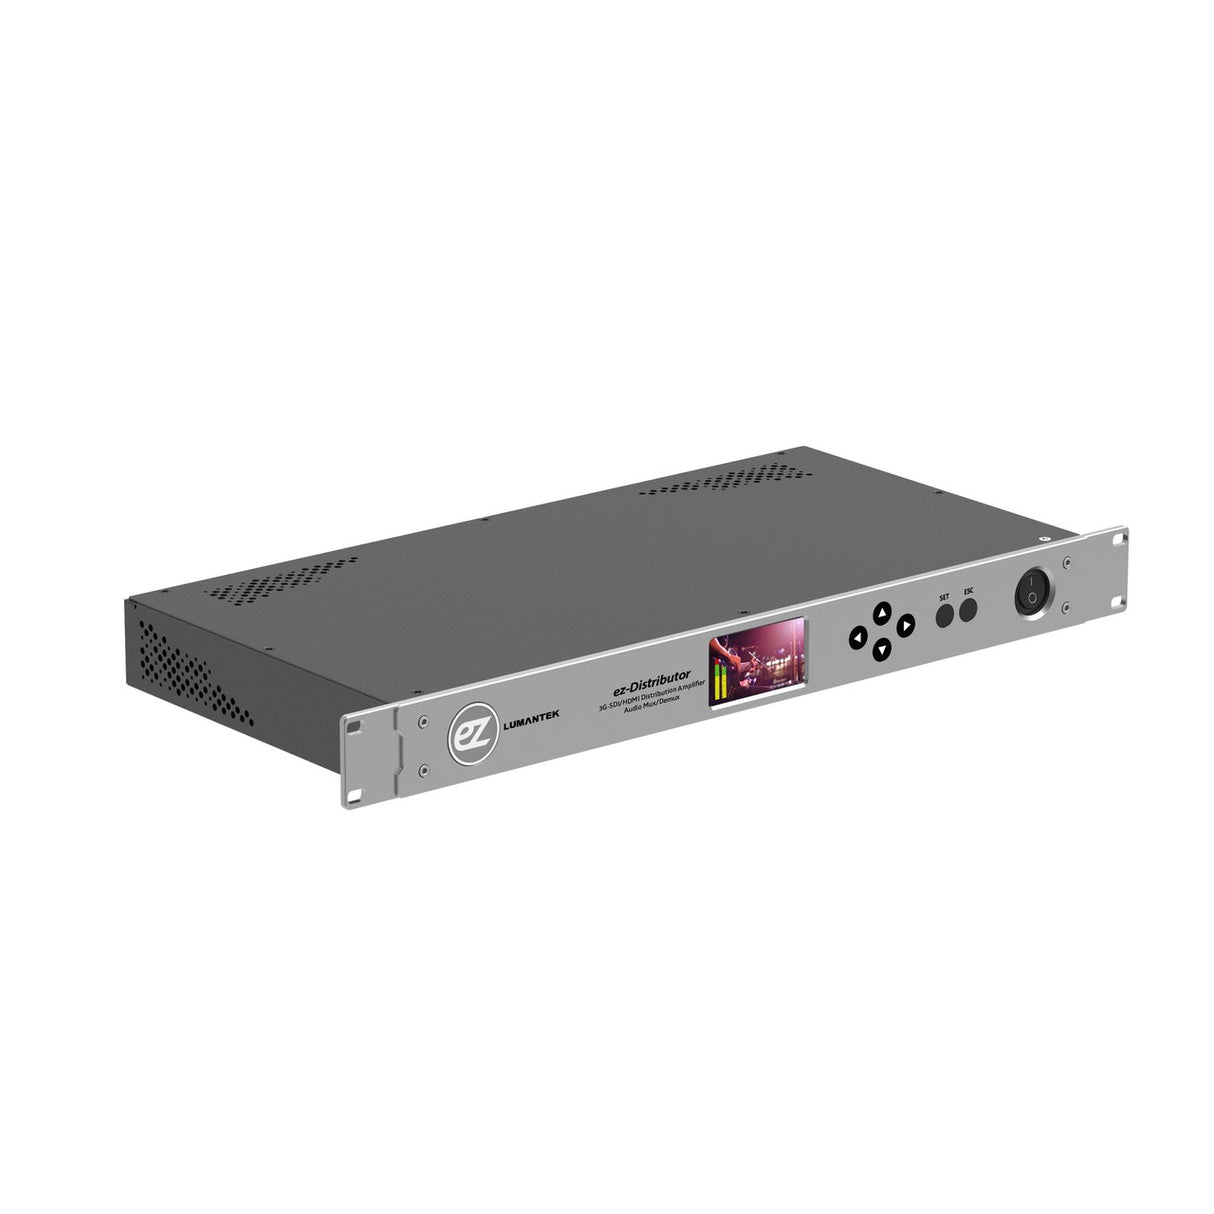 Lumantek ez-Distributor | 12x 3G-SDI / 2x HDMI Distribution Amplifier